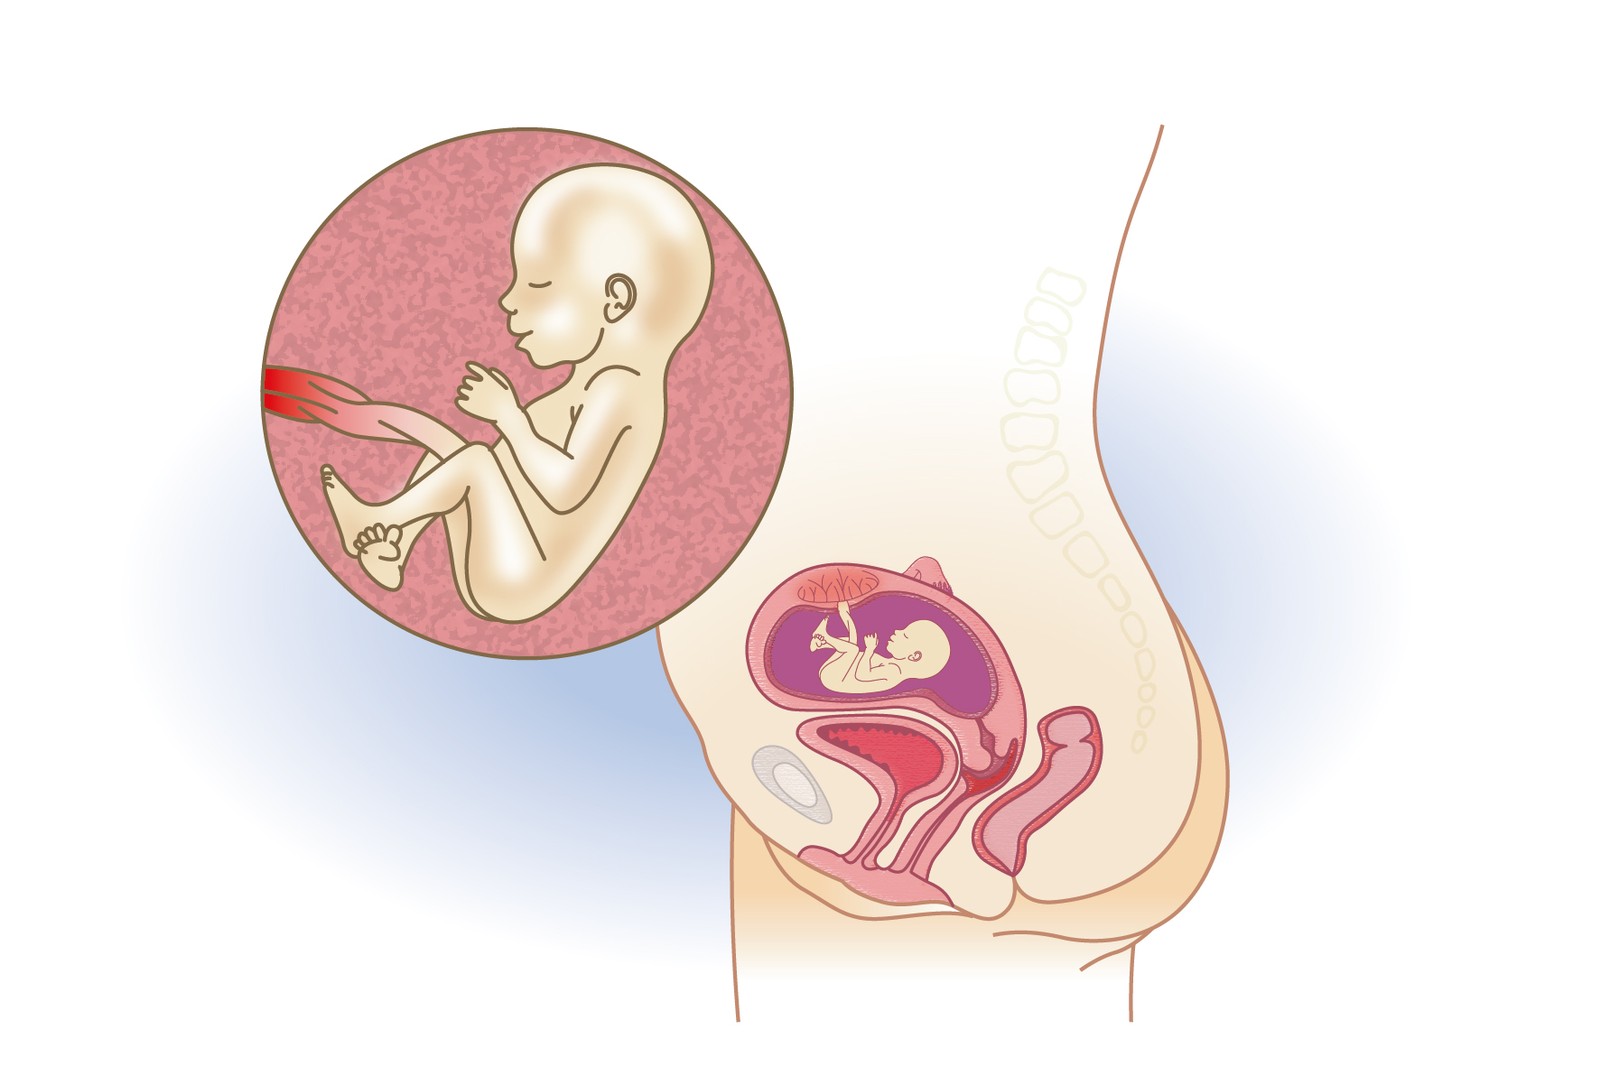 Plod v 16. týdnu těhotenství